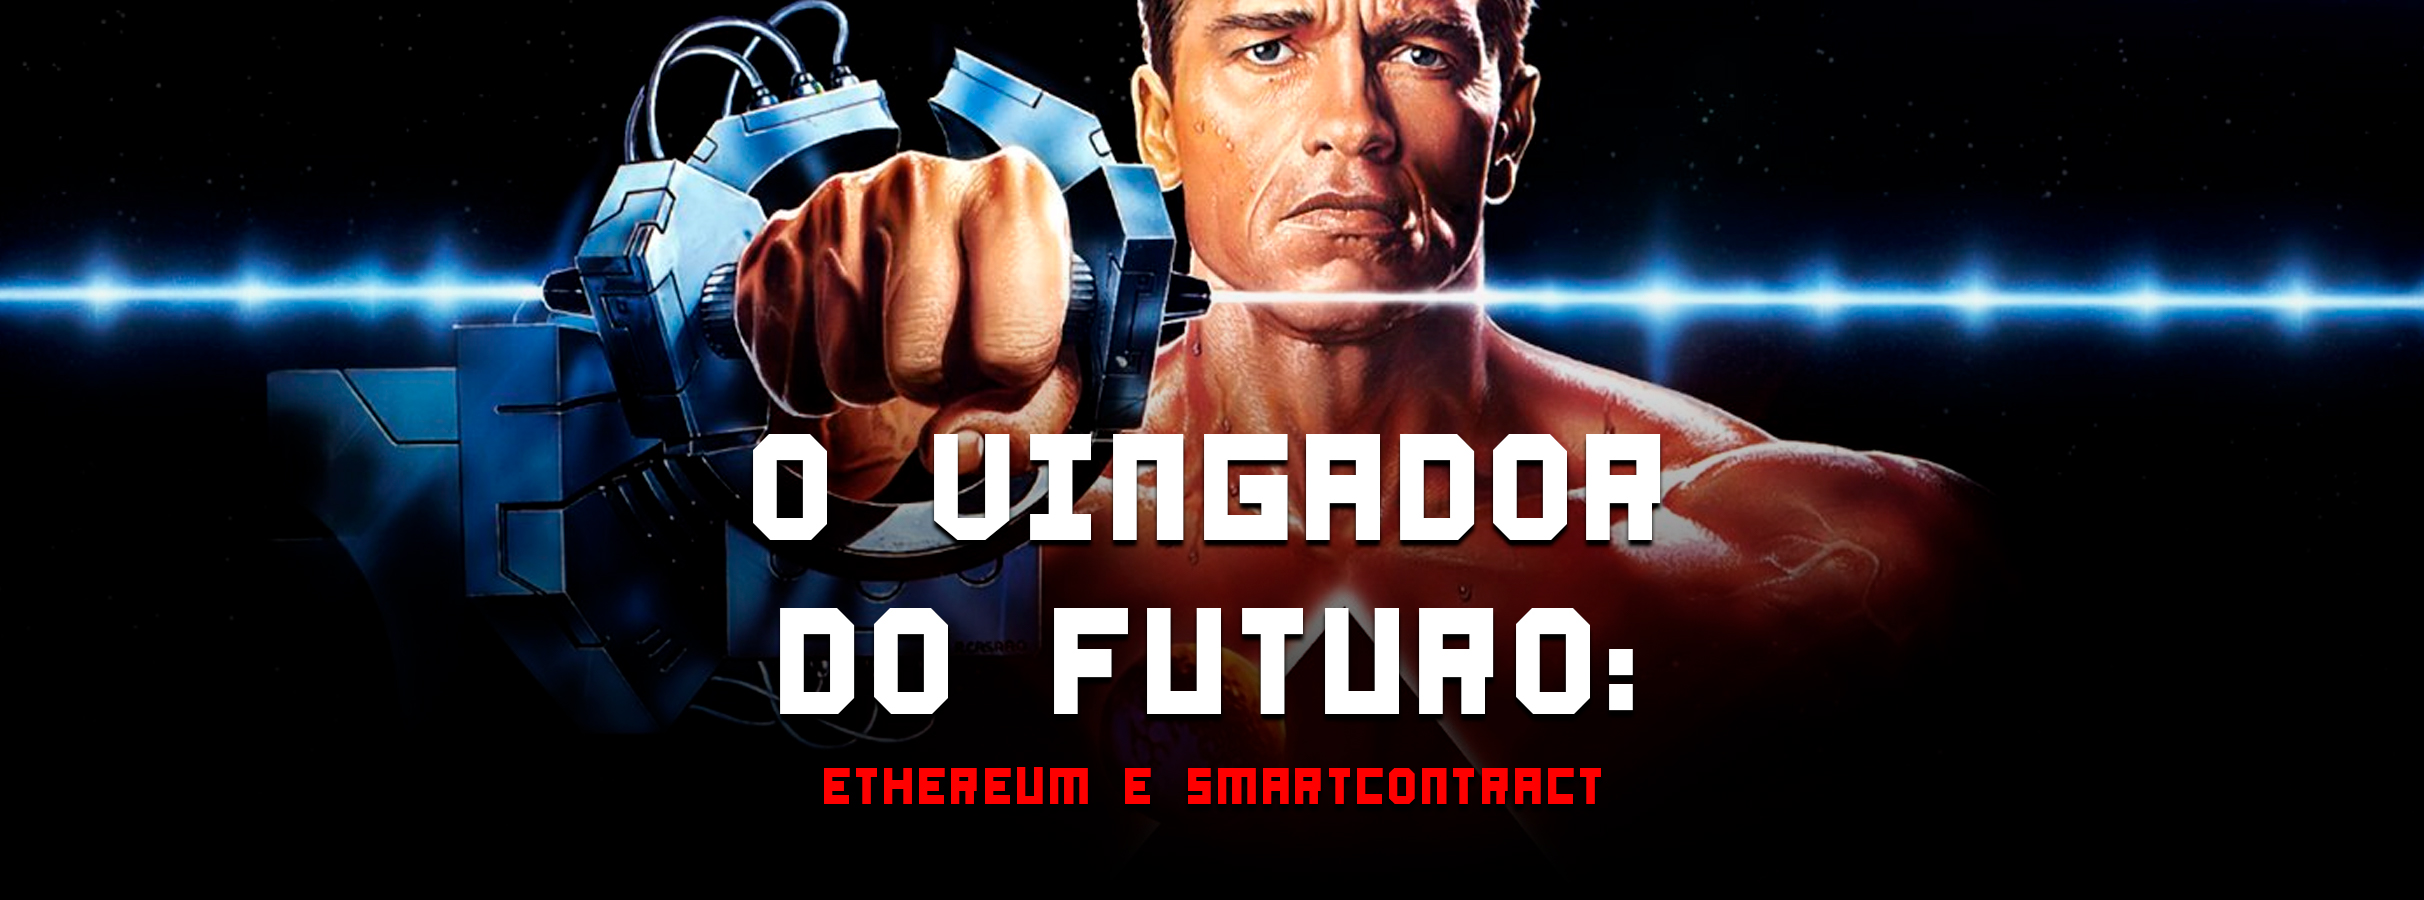 Conexão Satoshi #06 – O vingador do futuro: Ethereum e Contratos Inteligentes